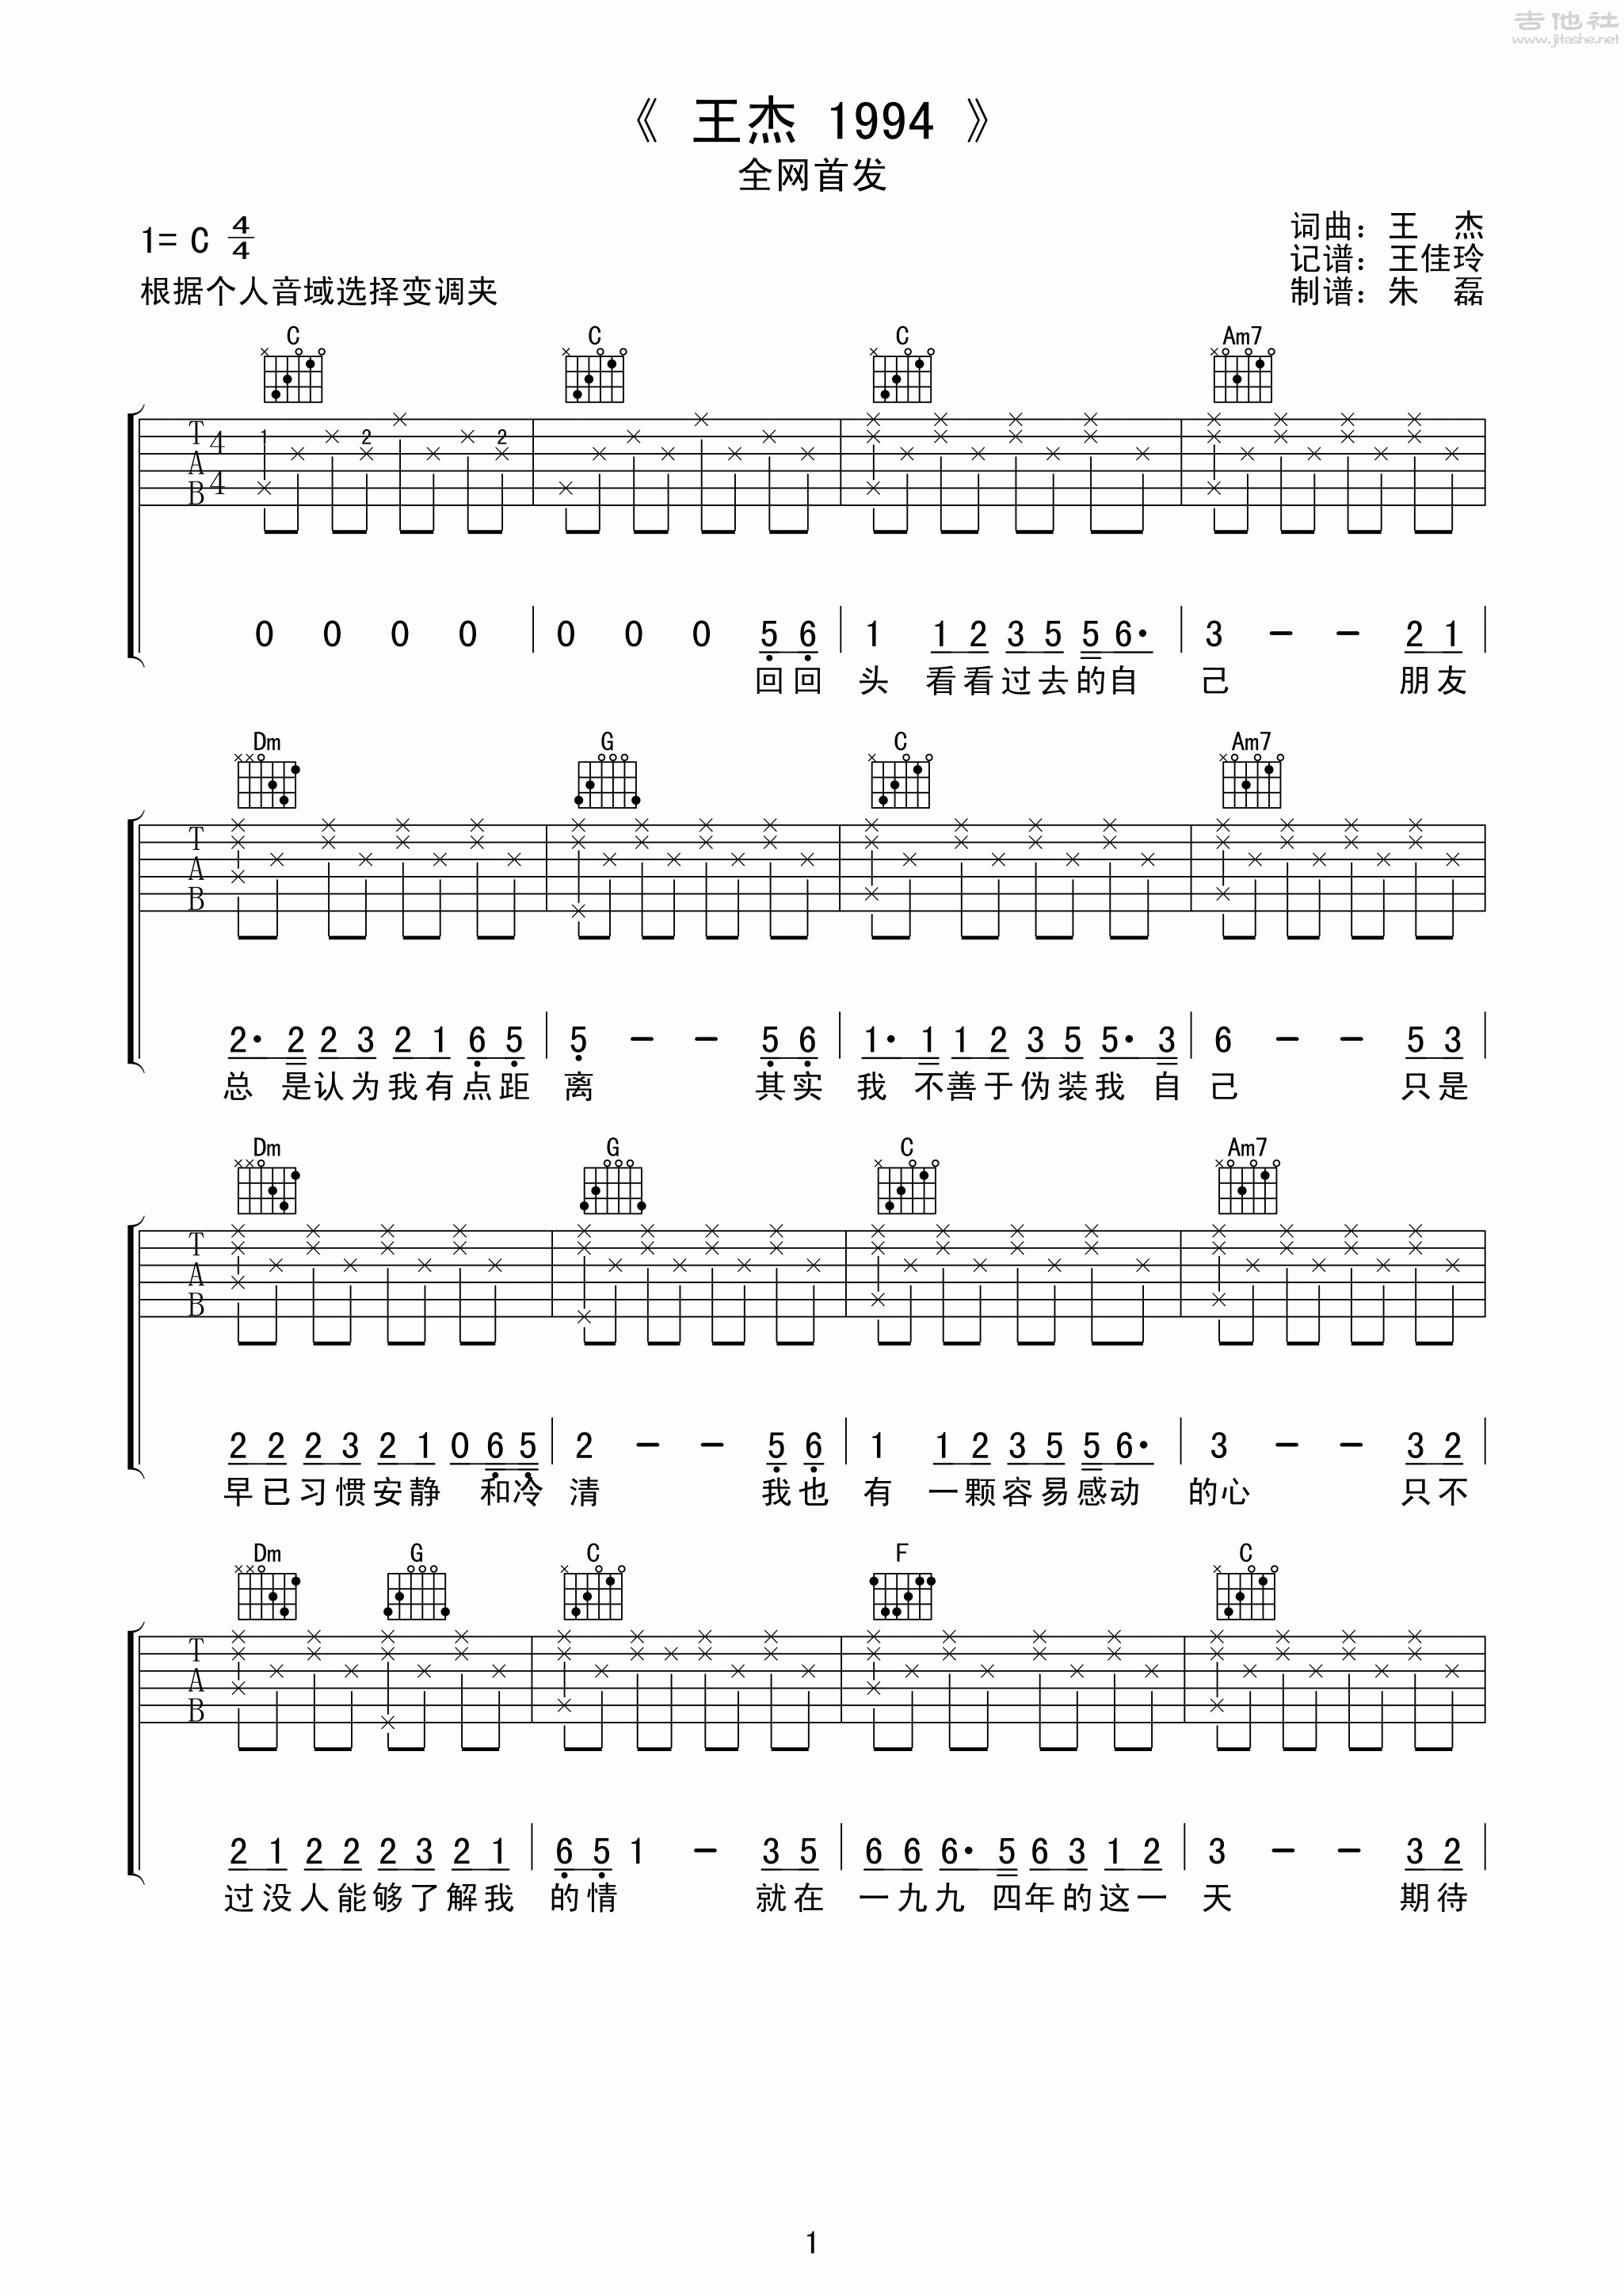 王杰1994吉他谱(图片谱,弹唱,分解和弦)_王杰(Dave Wang)_王杰199401.gif